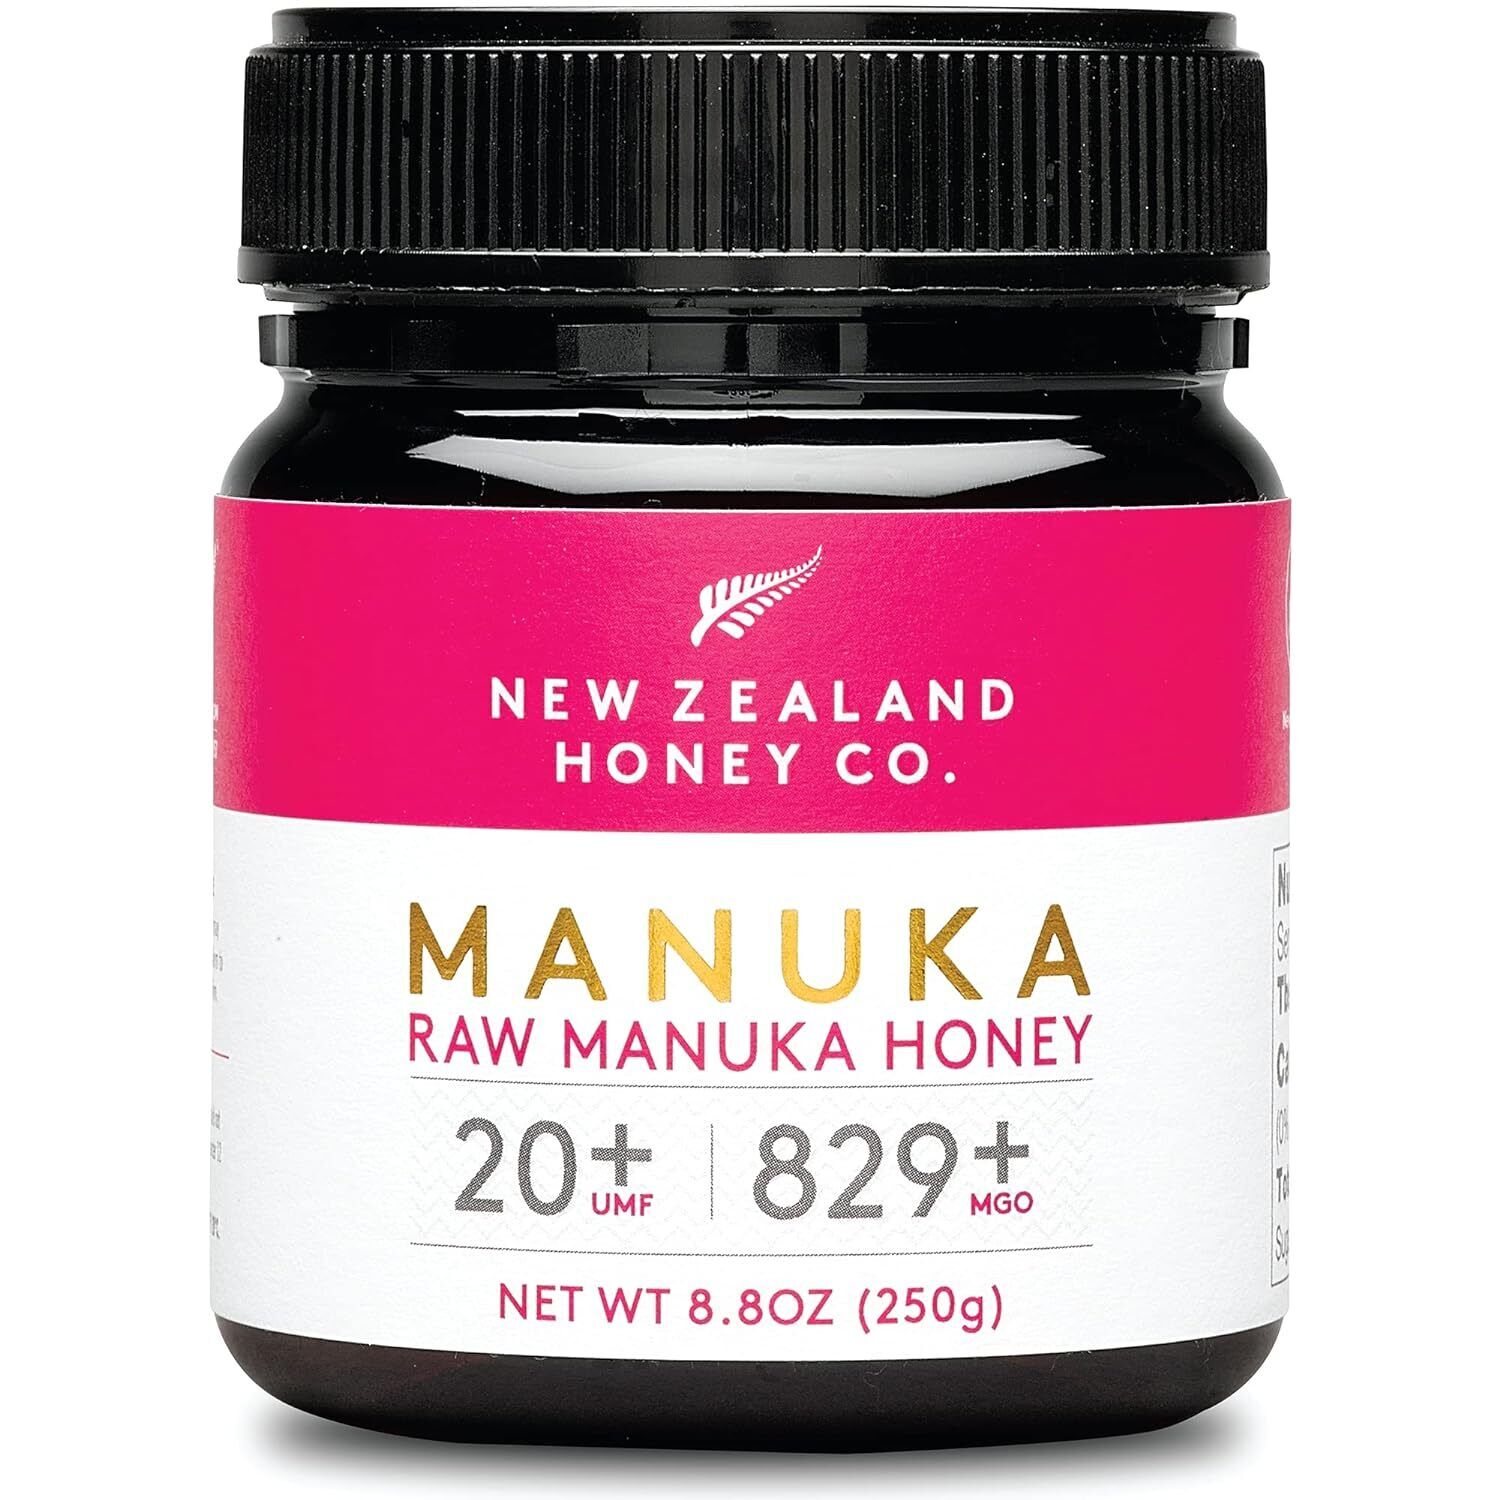 New Zealand Honey Co. Raw Manuka Honey UMF 20+ | MGO 829+, UMF Certified